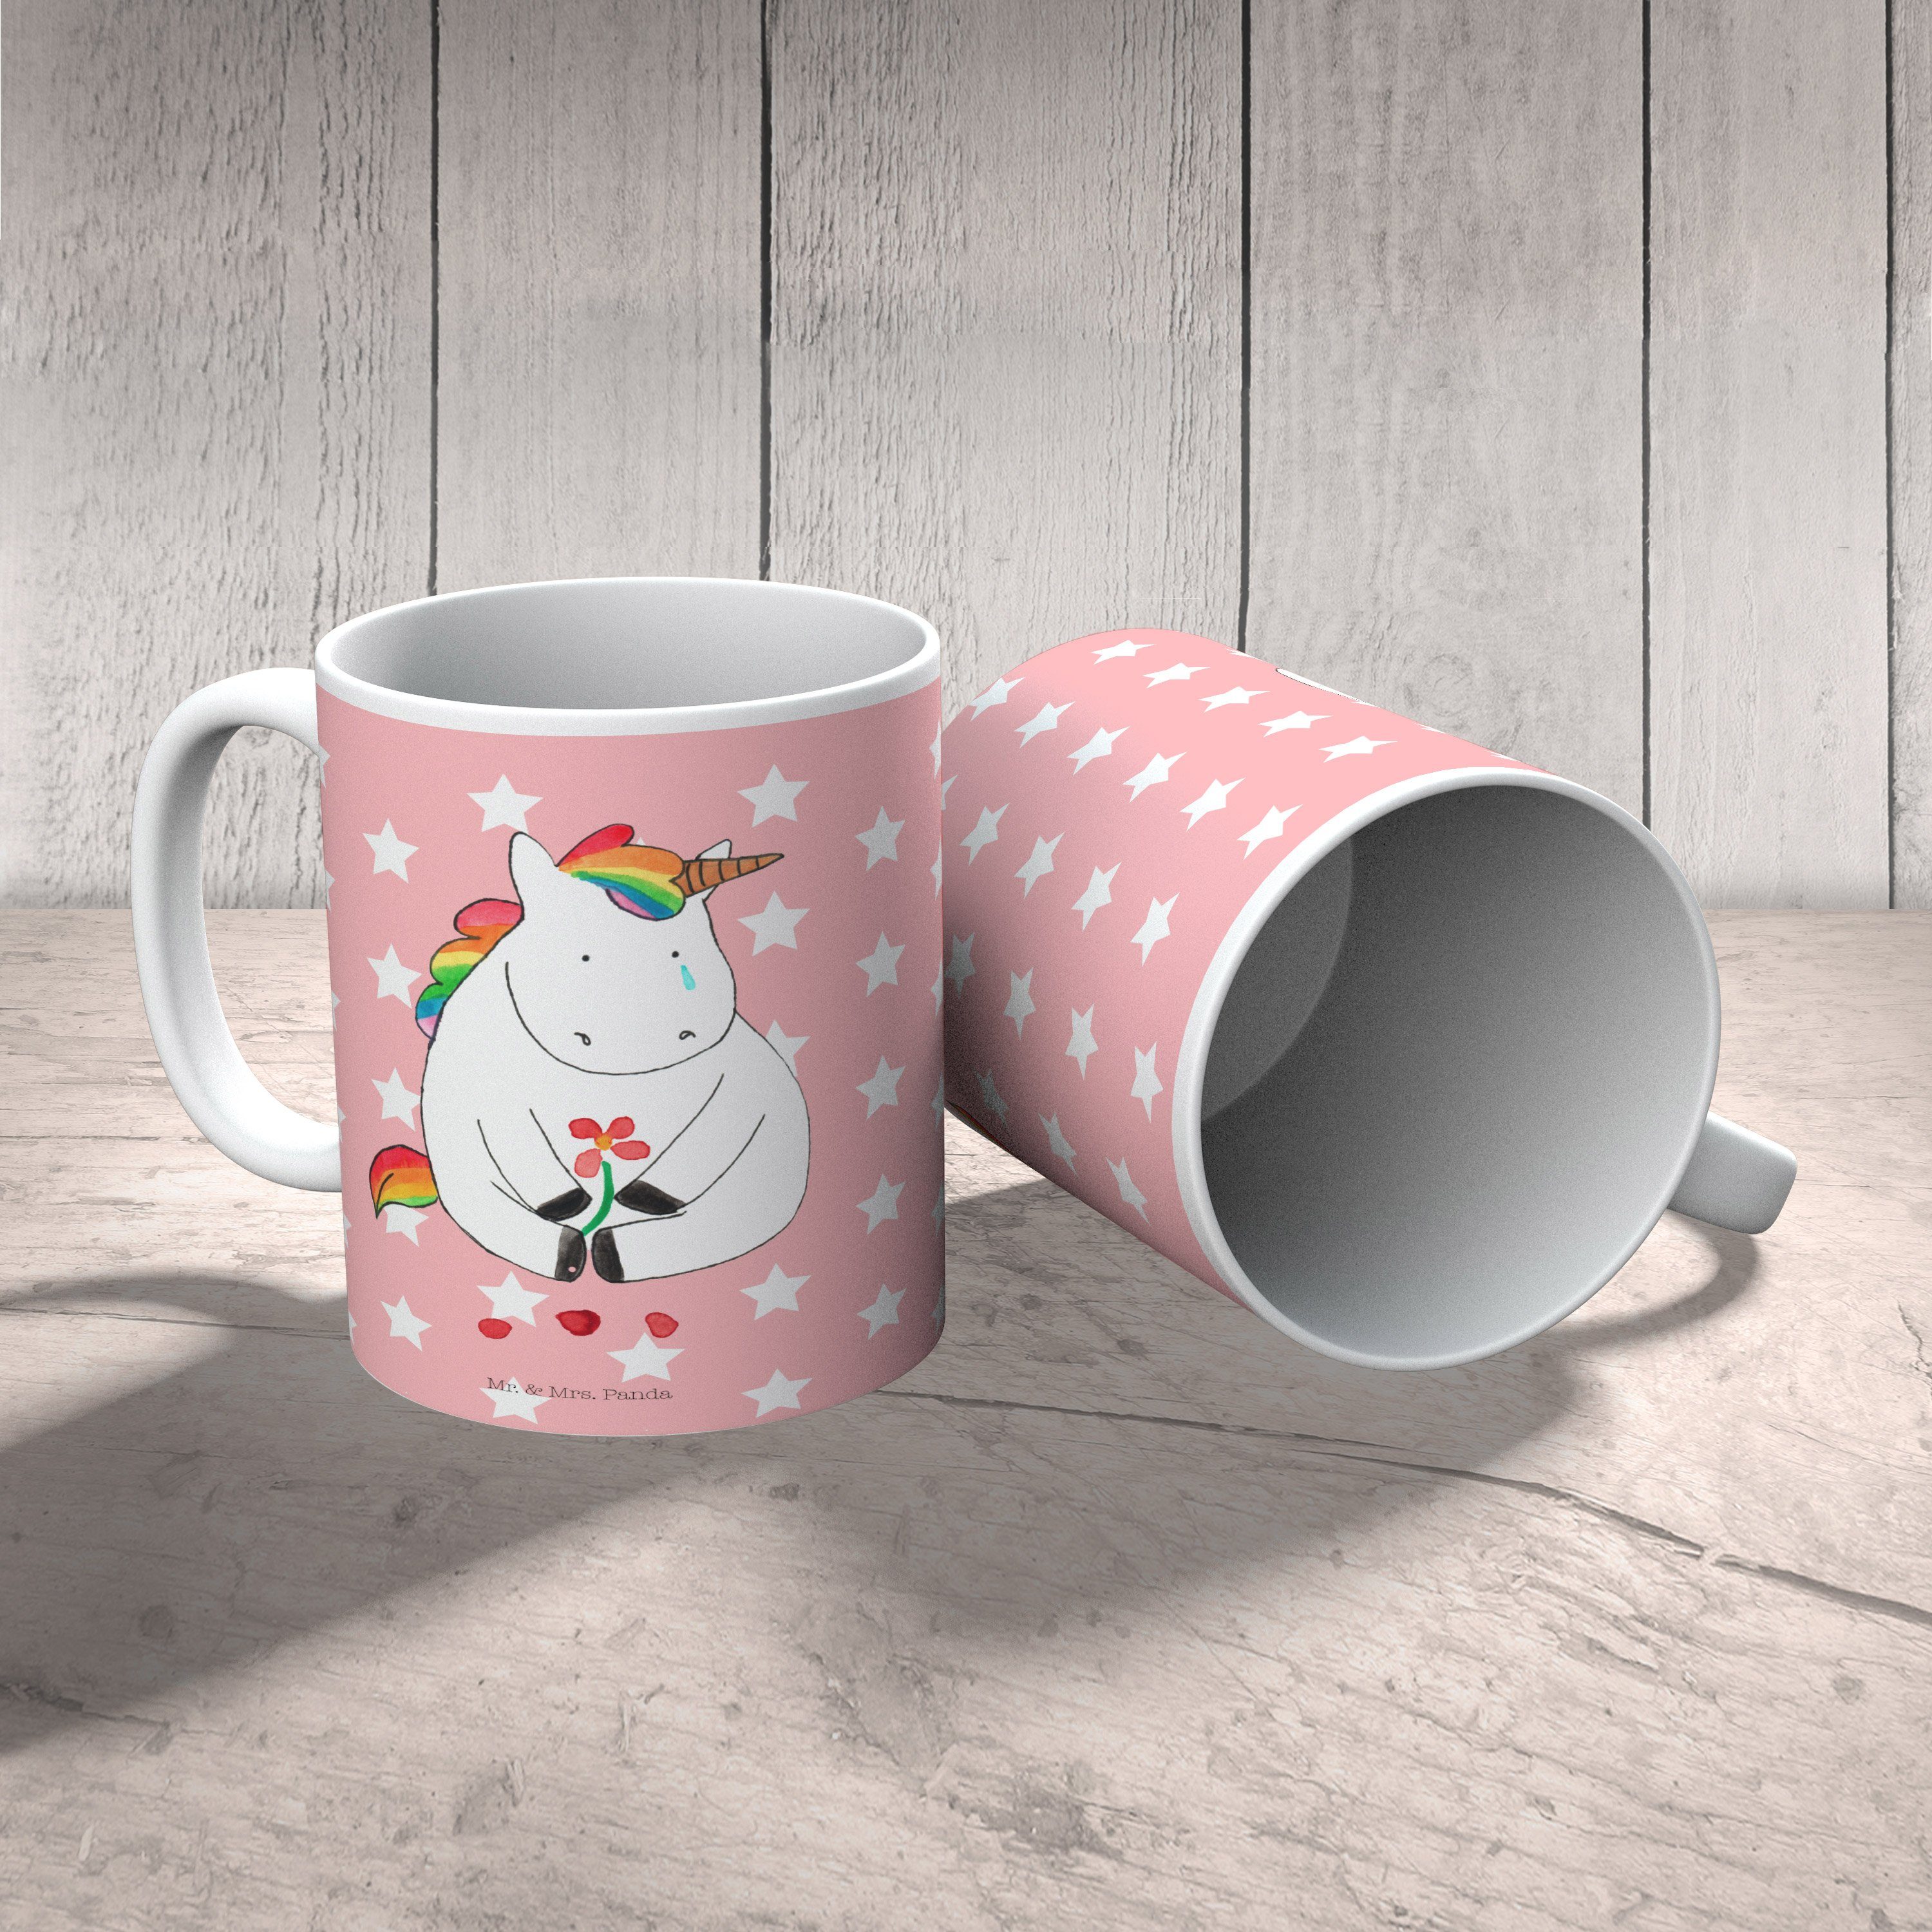 & - Mrs. Kinderbecher Pastell Kaffeetasse, Traurig Tasse, Rot Einhorn, Geschenk, Mr. Einhorn Panda - Kunststoff